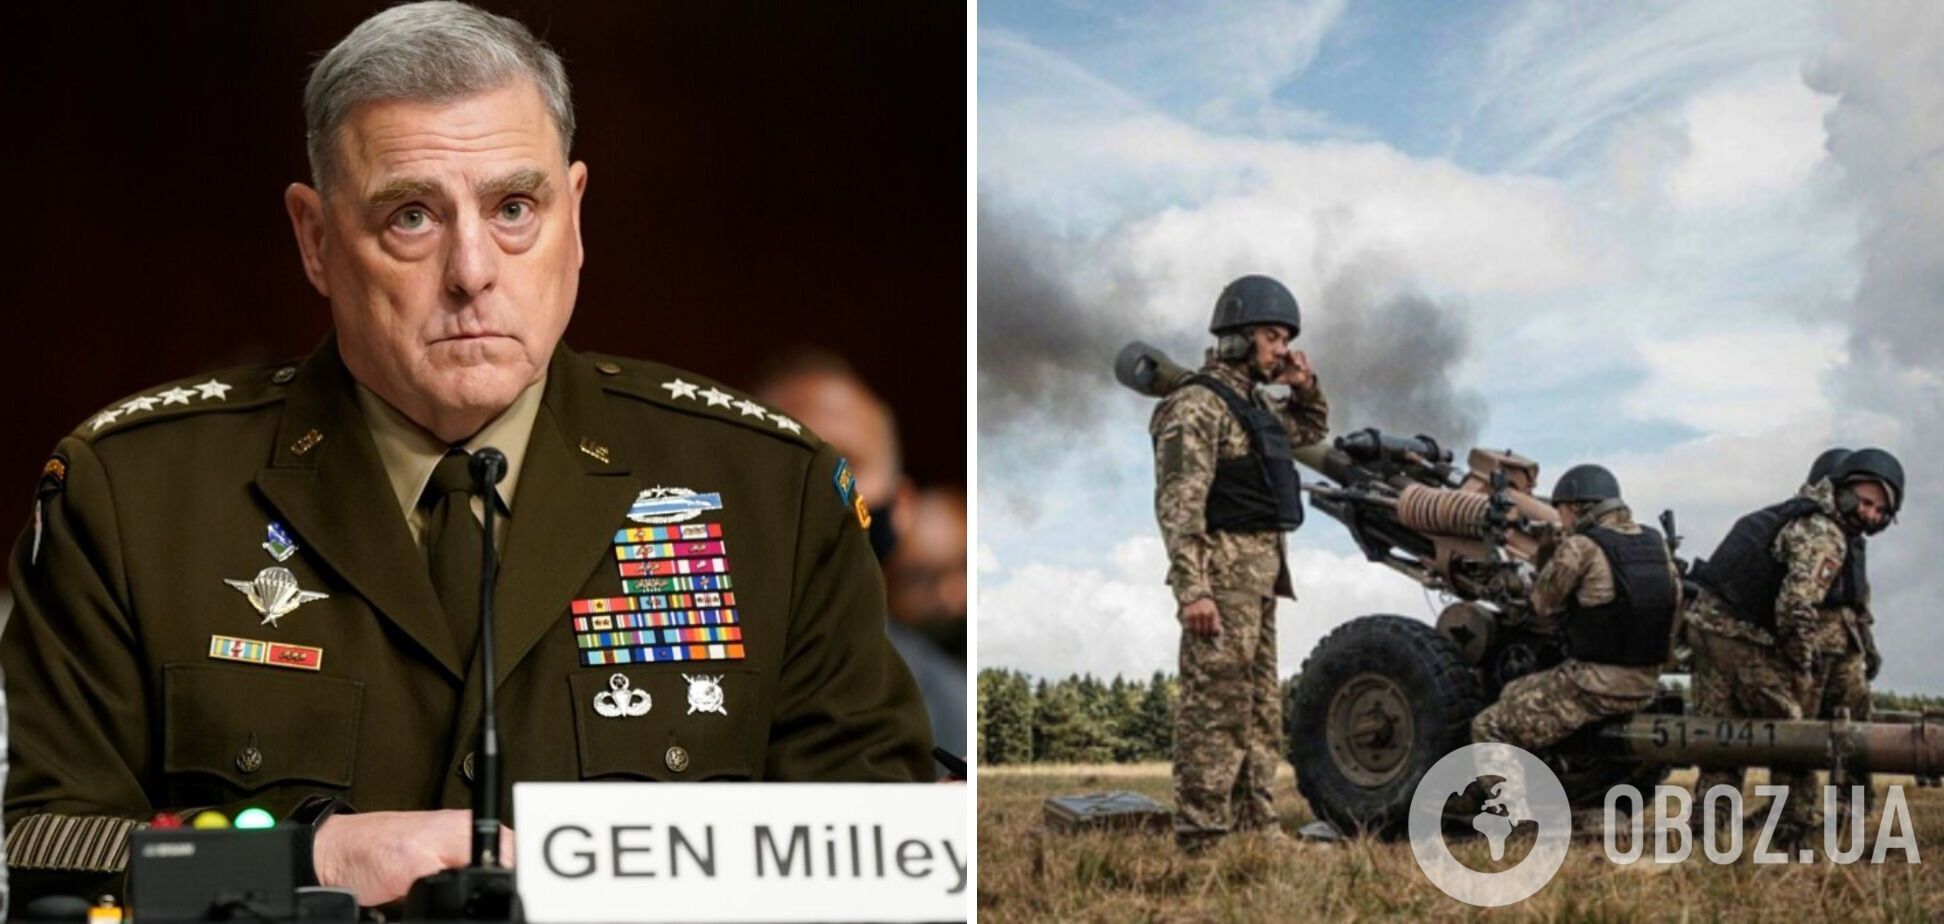  'Це ще не кінець': генерал Міллі закликав не поспішати з висновками про успіх чи невдачу контрнаступу ЗСУ